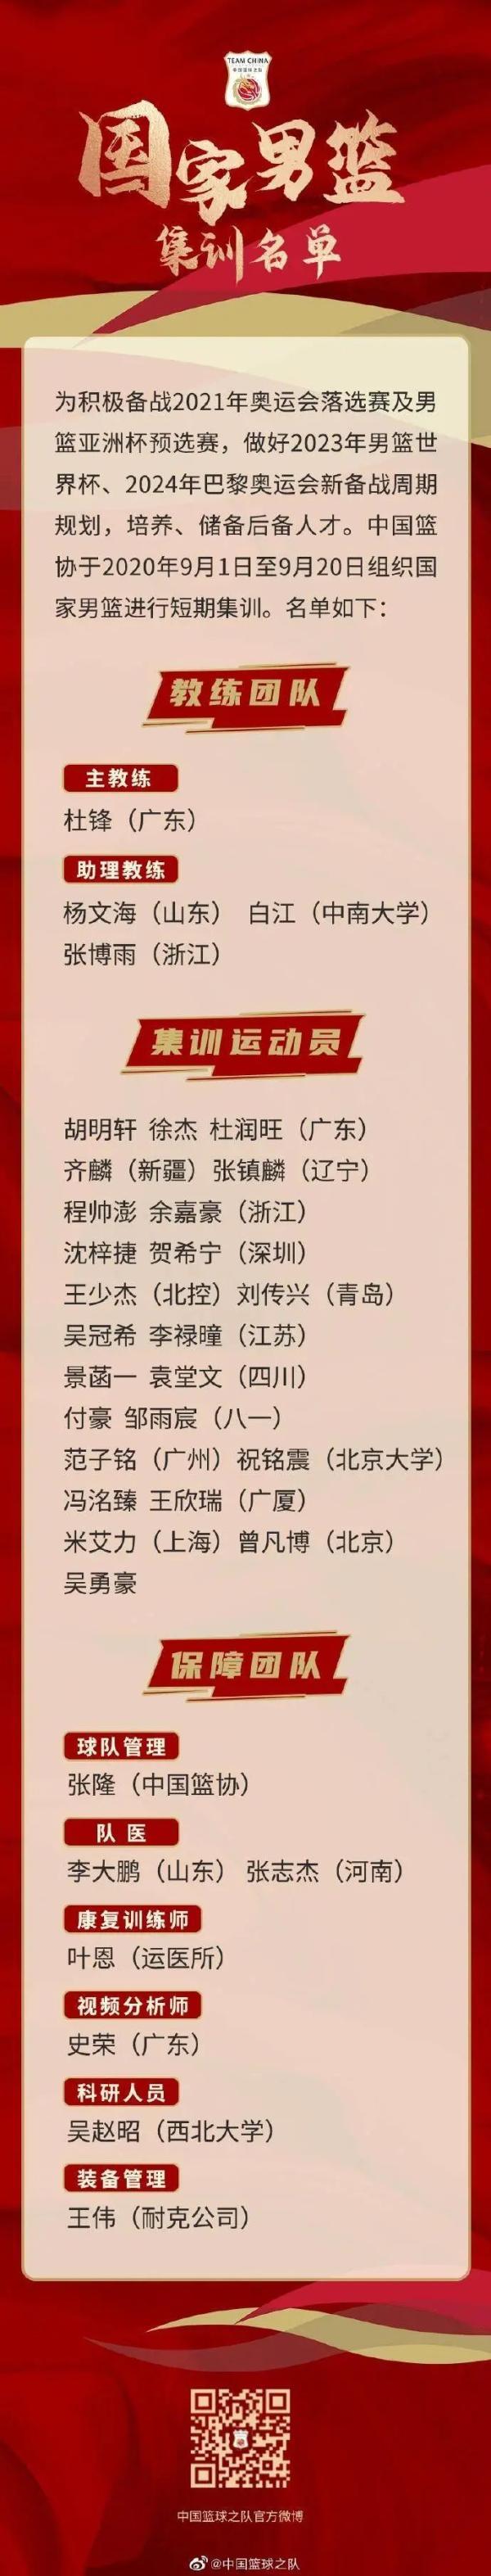 中国男篮集训名单出炉图片